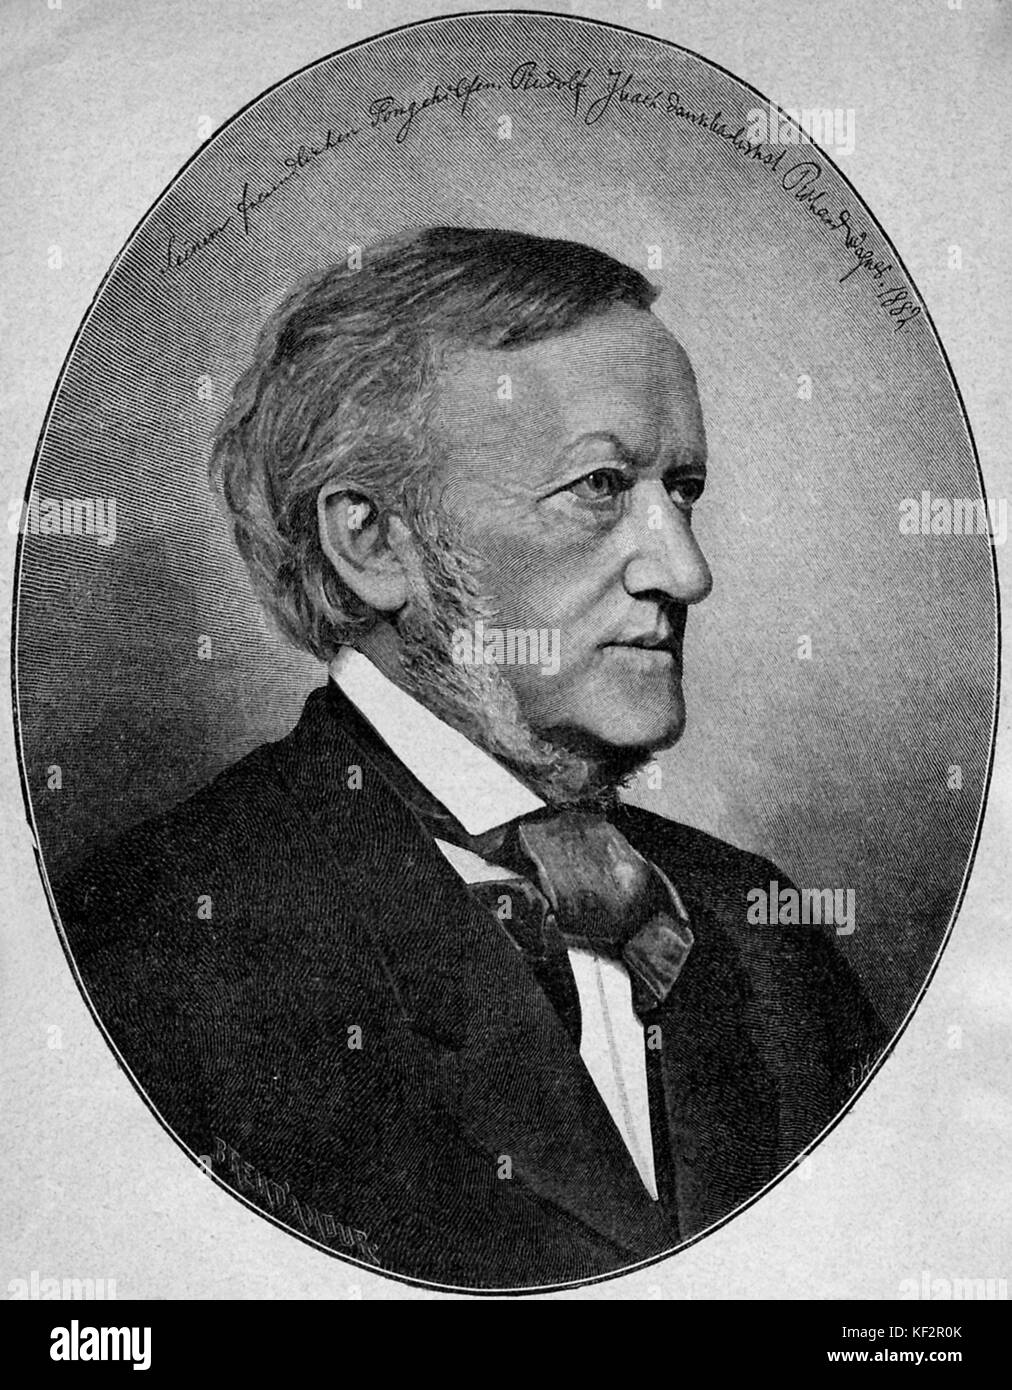 Richard Wagner ritratto . Basato sulla versione da J Albert, Monaco di Baviera. Datata 1882. Compositore tedesco & autore, 22 maggio 1813 - 13 febbraio 1883. Foto Stock